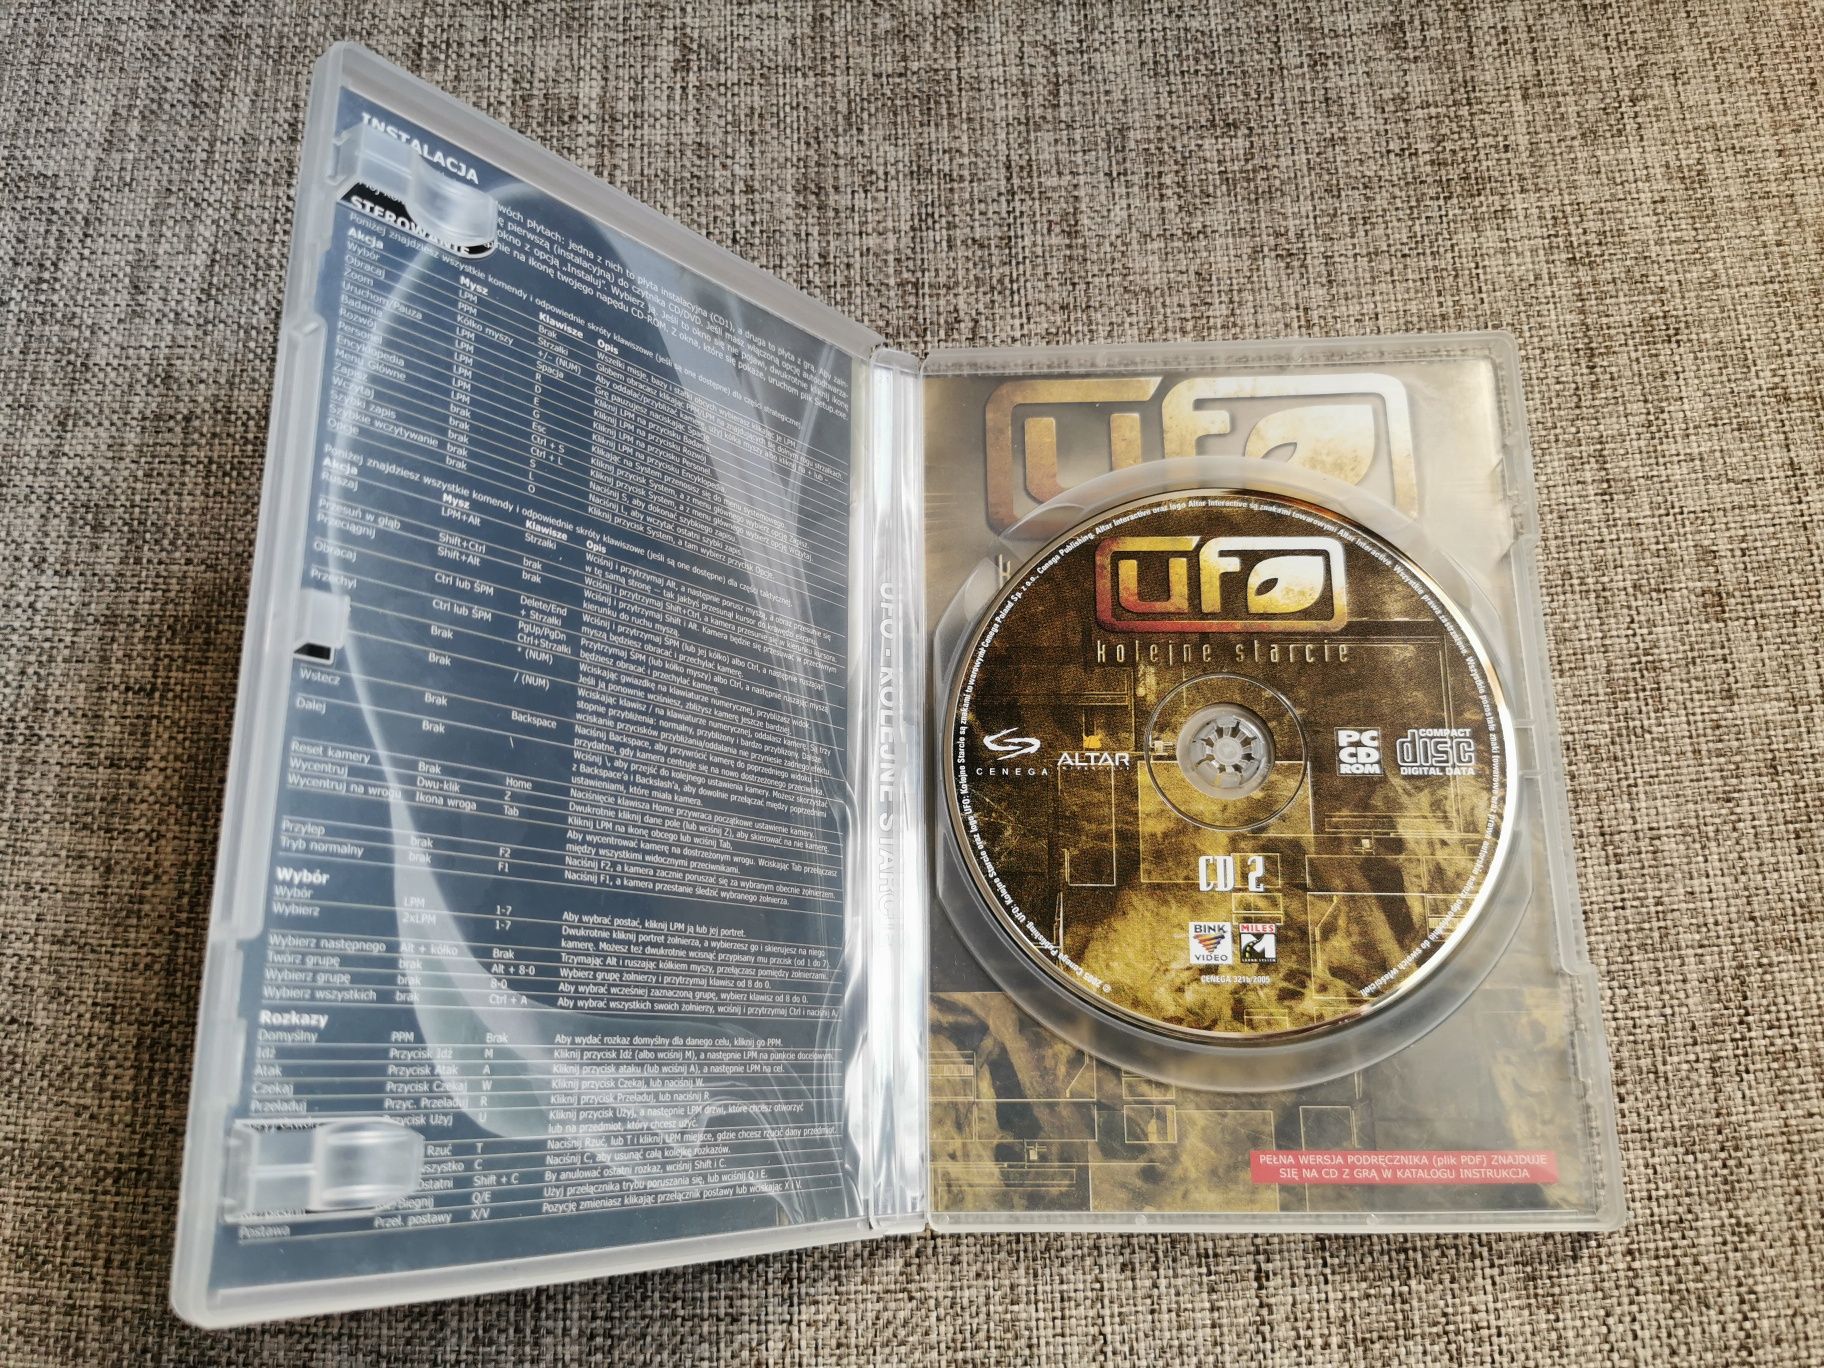 Gra PC DVD - UFO kolejne starcie